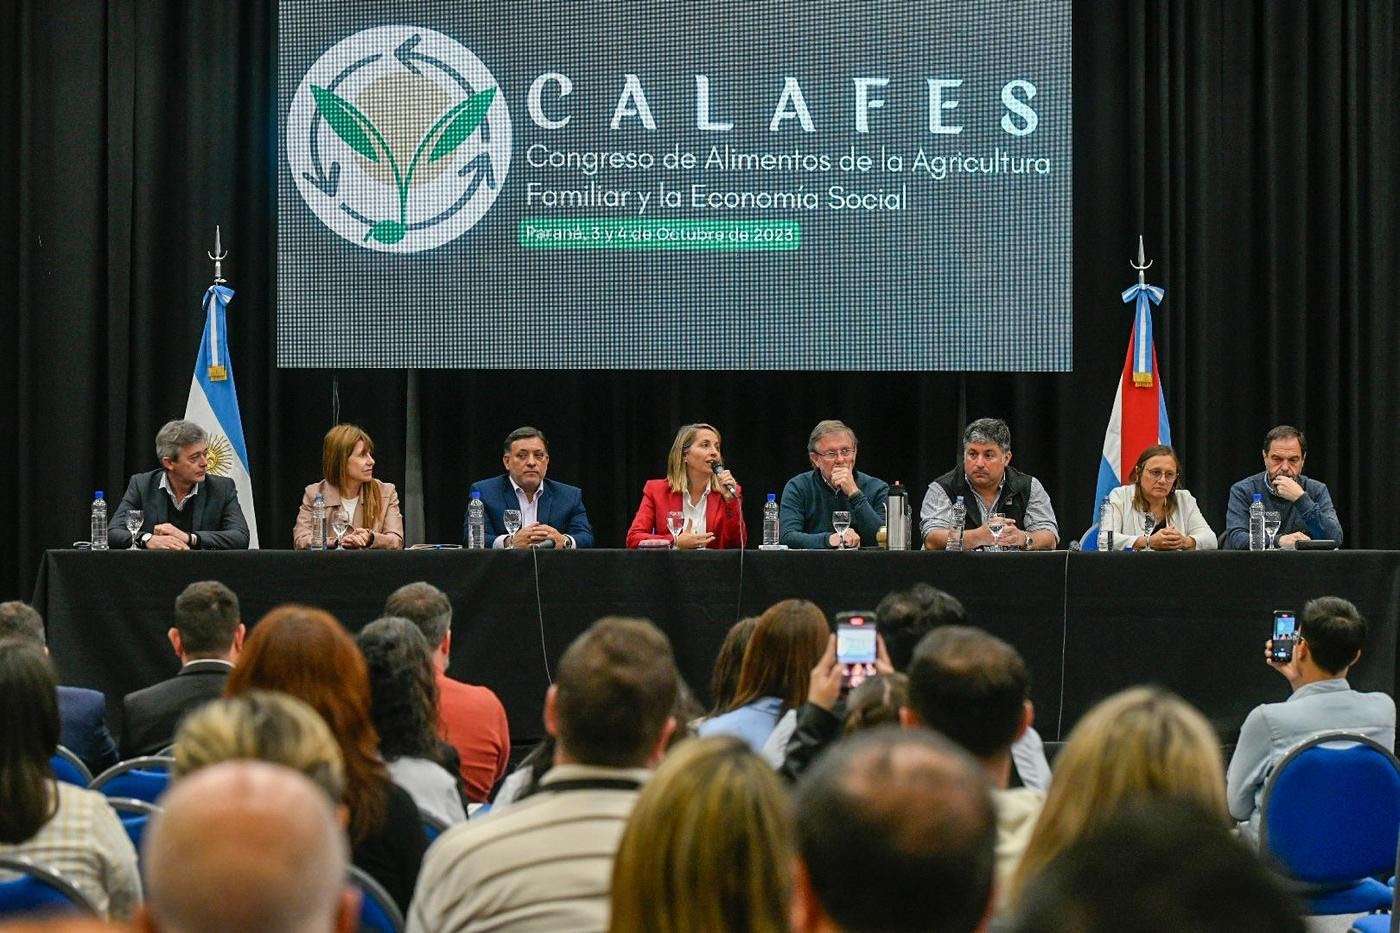 Se realiza el Primer Congreso de Alimentos de la Agricultura Familiar y la Economía Social